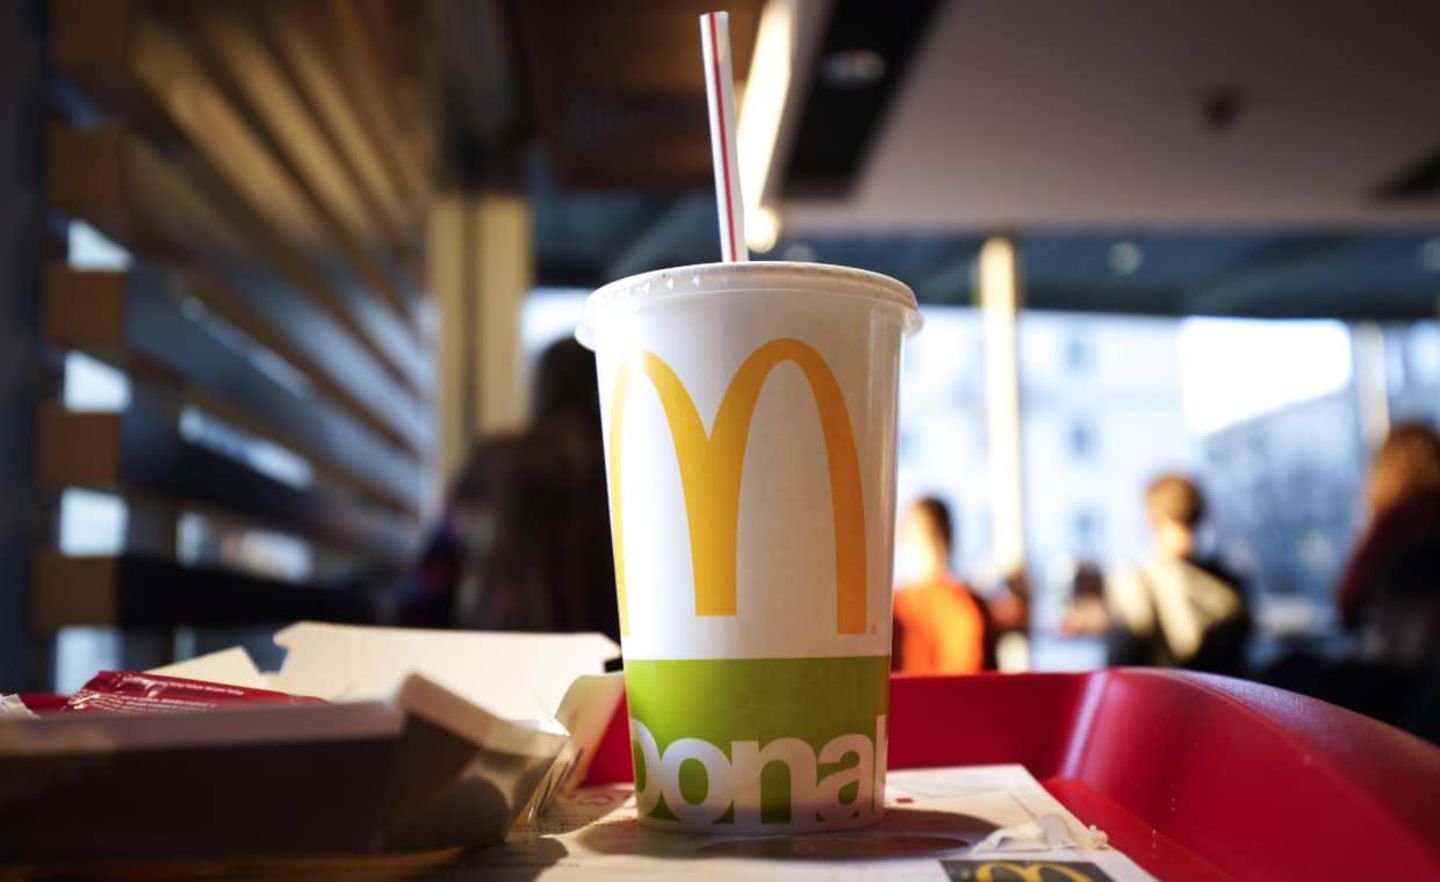 Wegen Lieferengpässen streicht die Fastfood-Kette McDonald's in Großbritannien die Milchshakes vorübergehend vom Menü